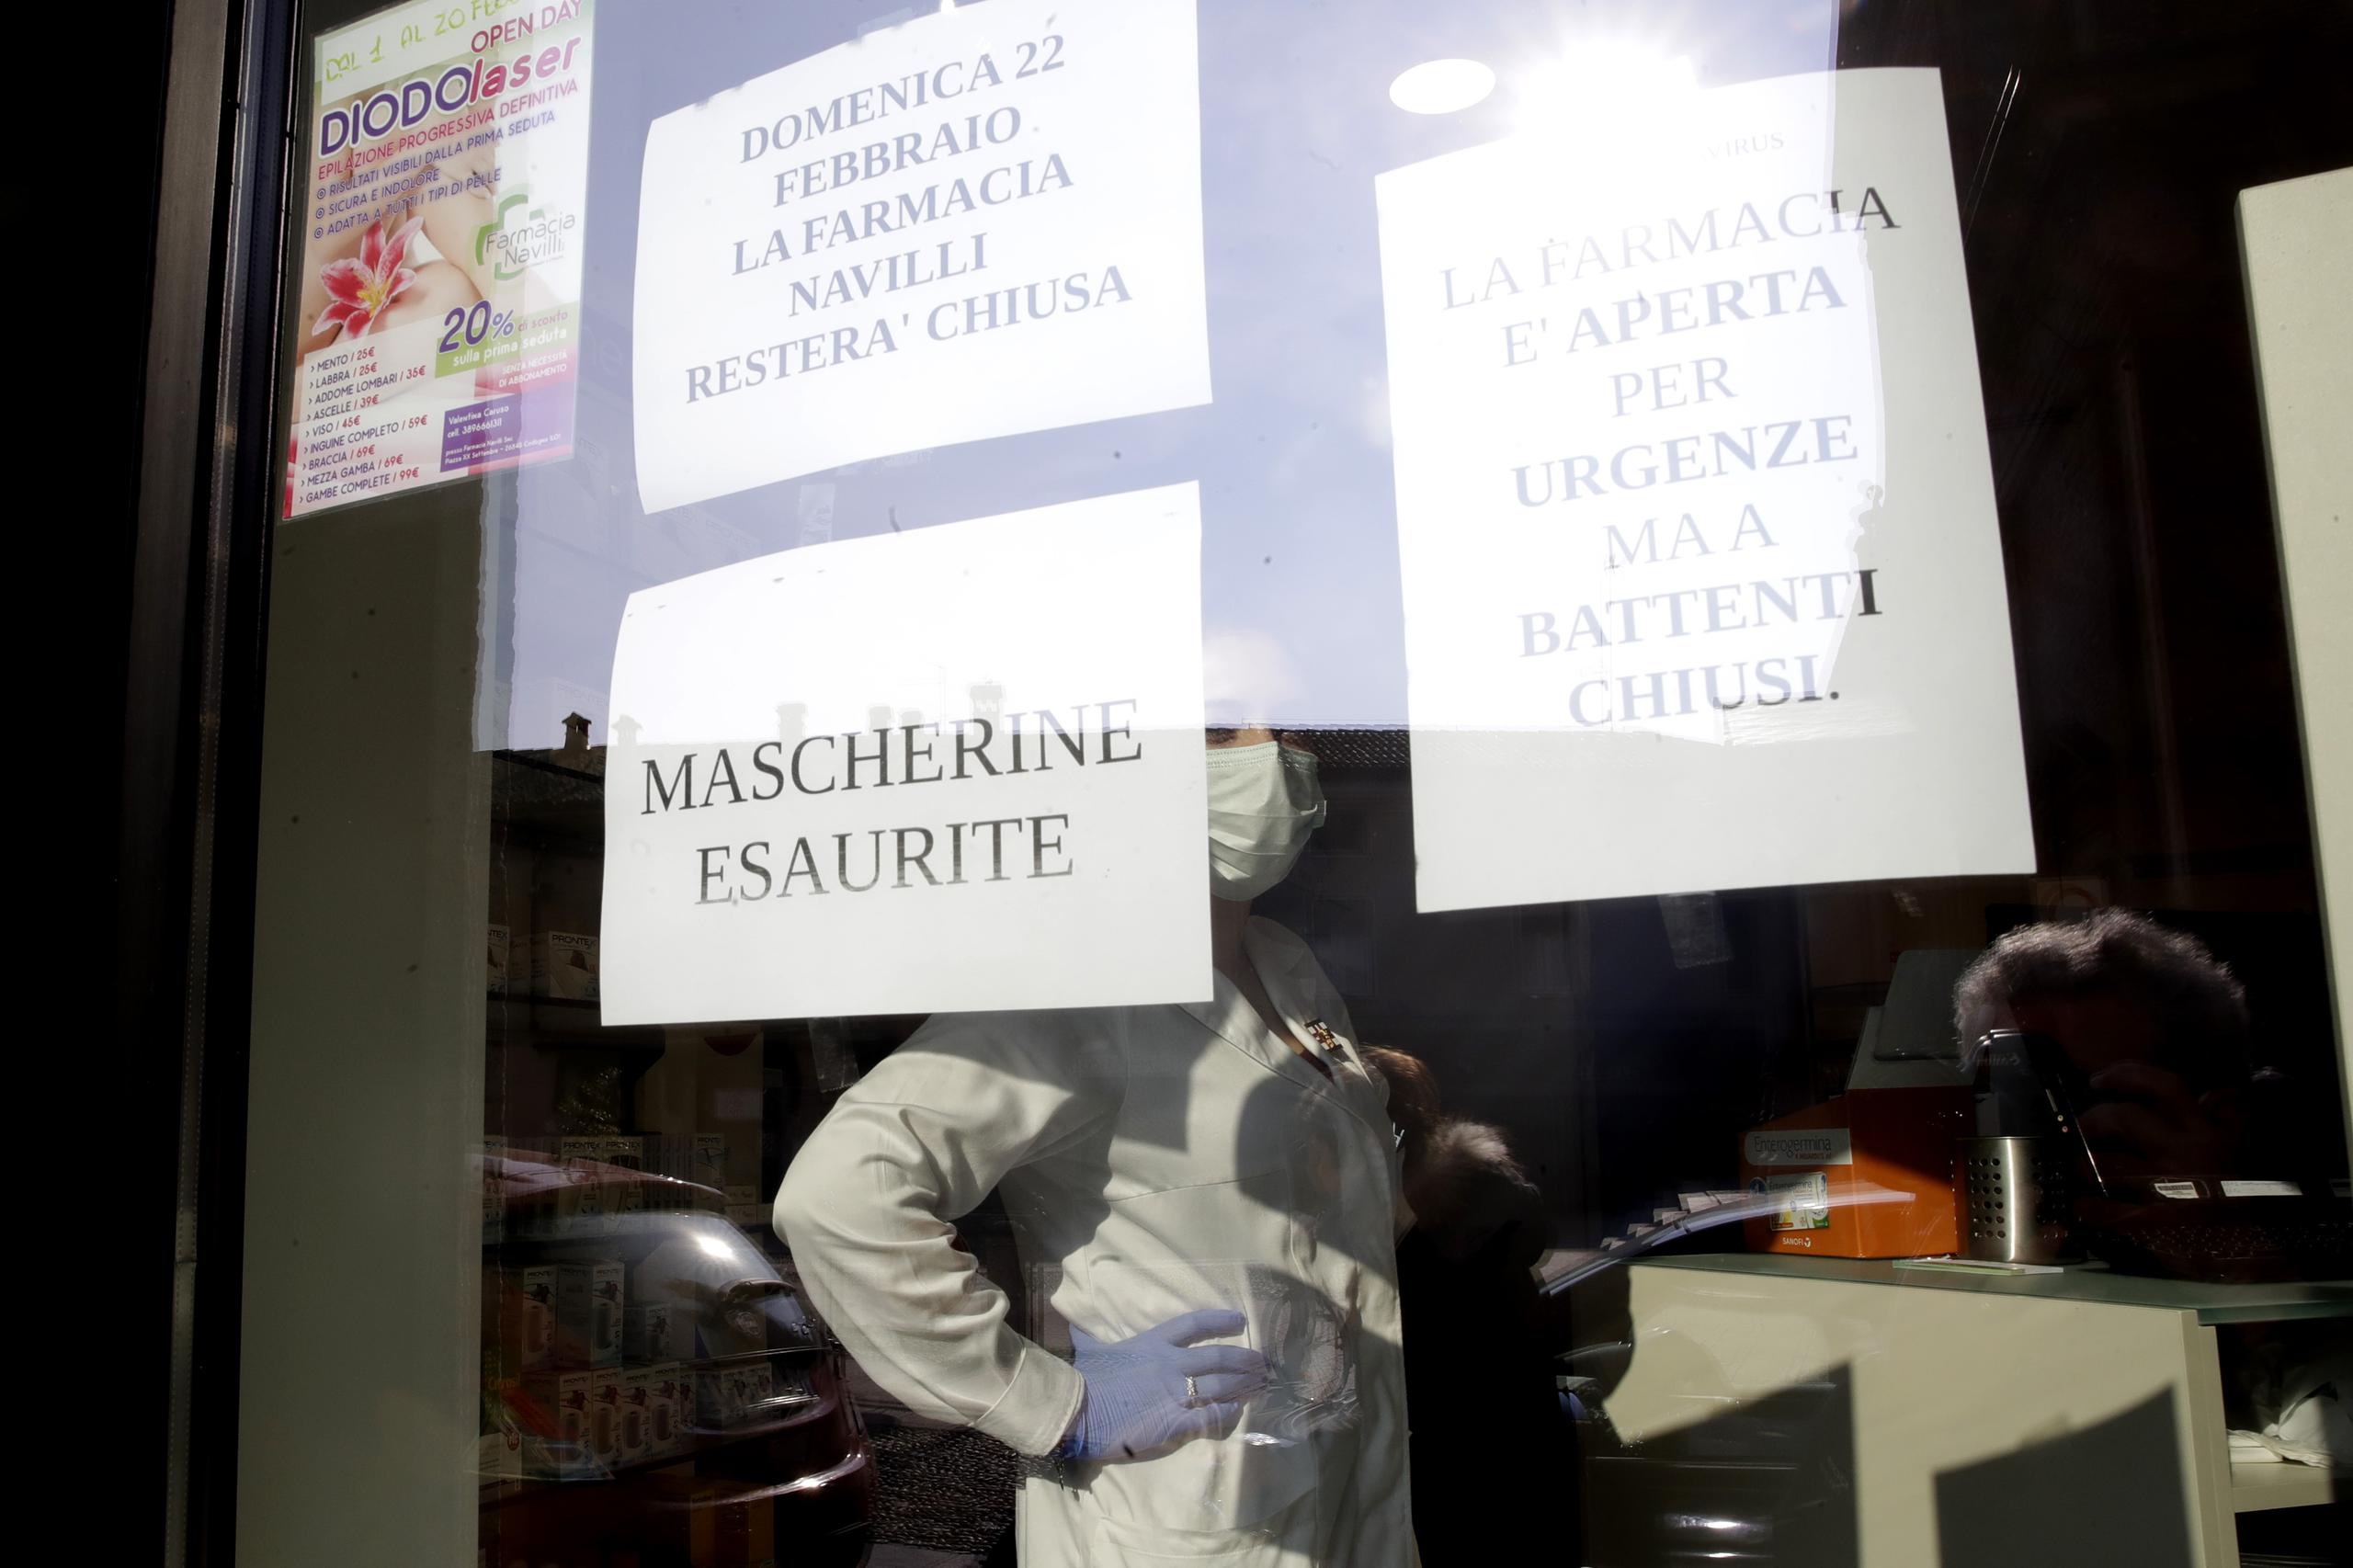 Unas notas que leen "máscaras agotadas" y "la farmacia está abierta por urgencias pero las persianas están cerradas", fueron puestas en una farmacia al norte de Italia.